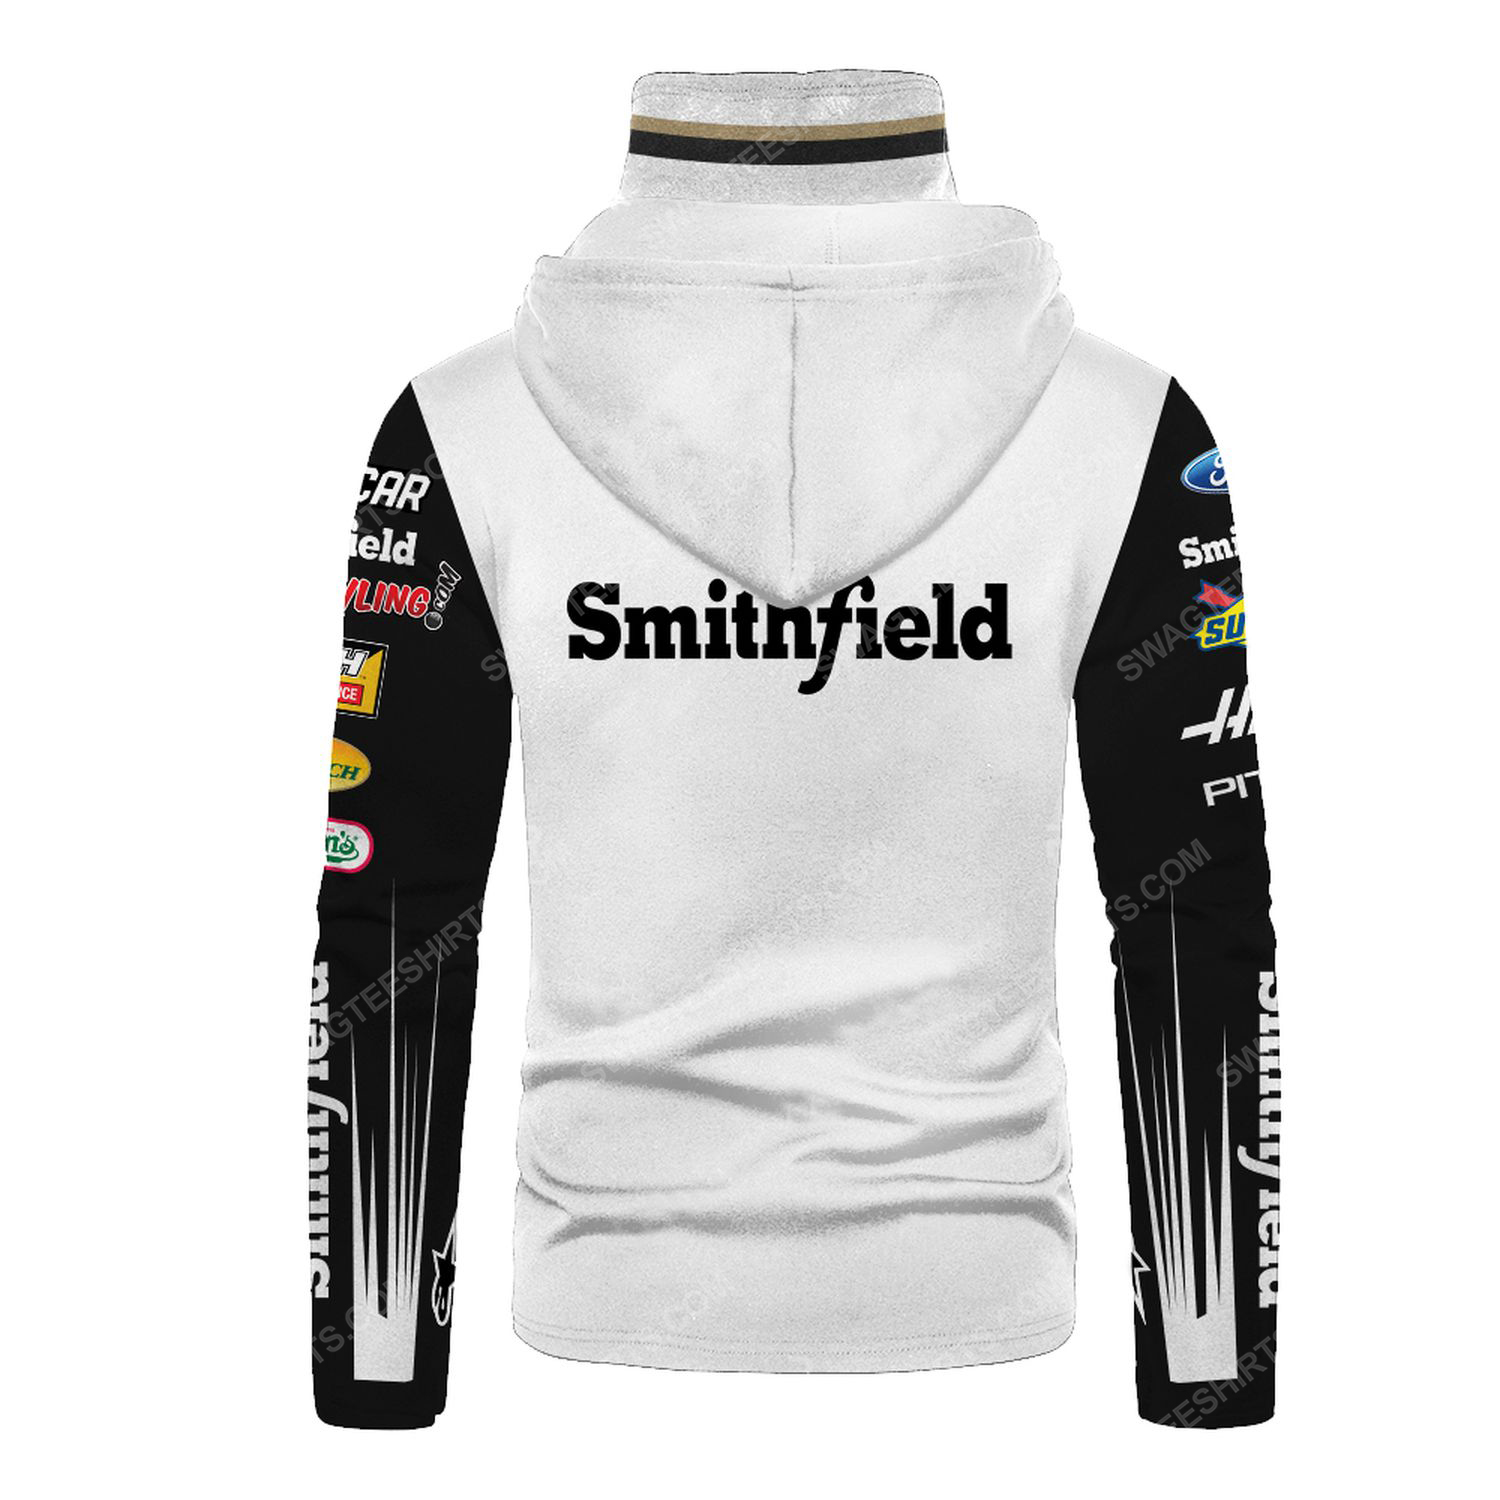 Custom smithfield foods racing team motorsport full printing hoodie mask - back